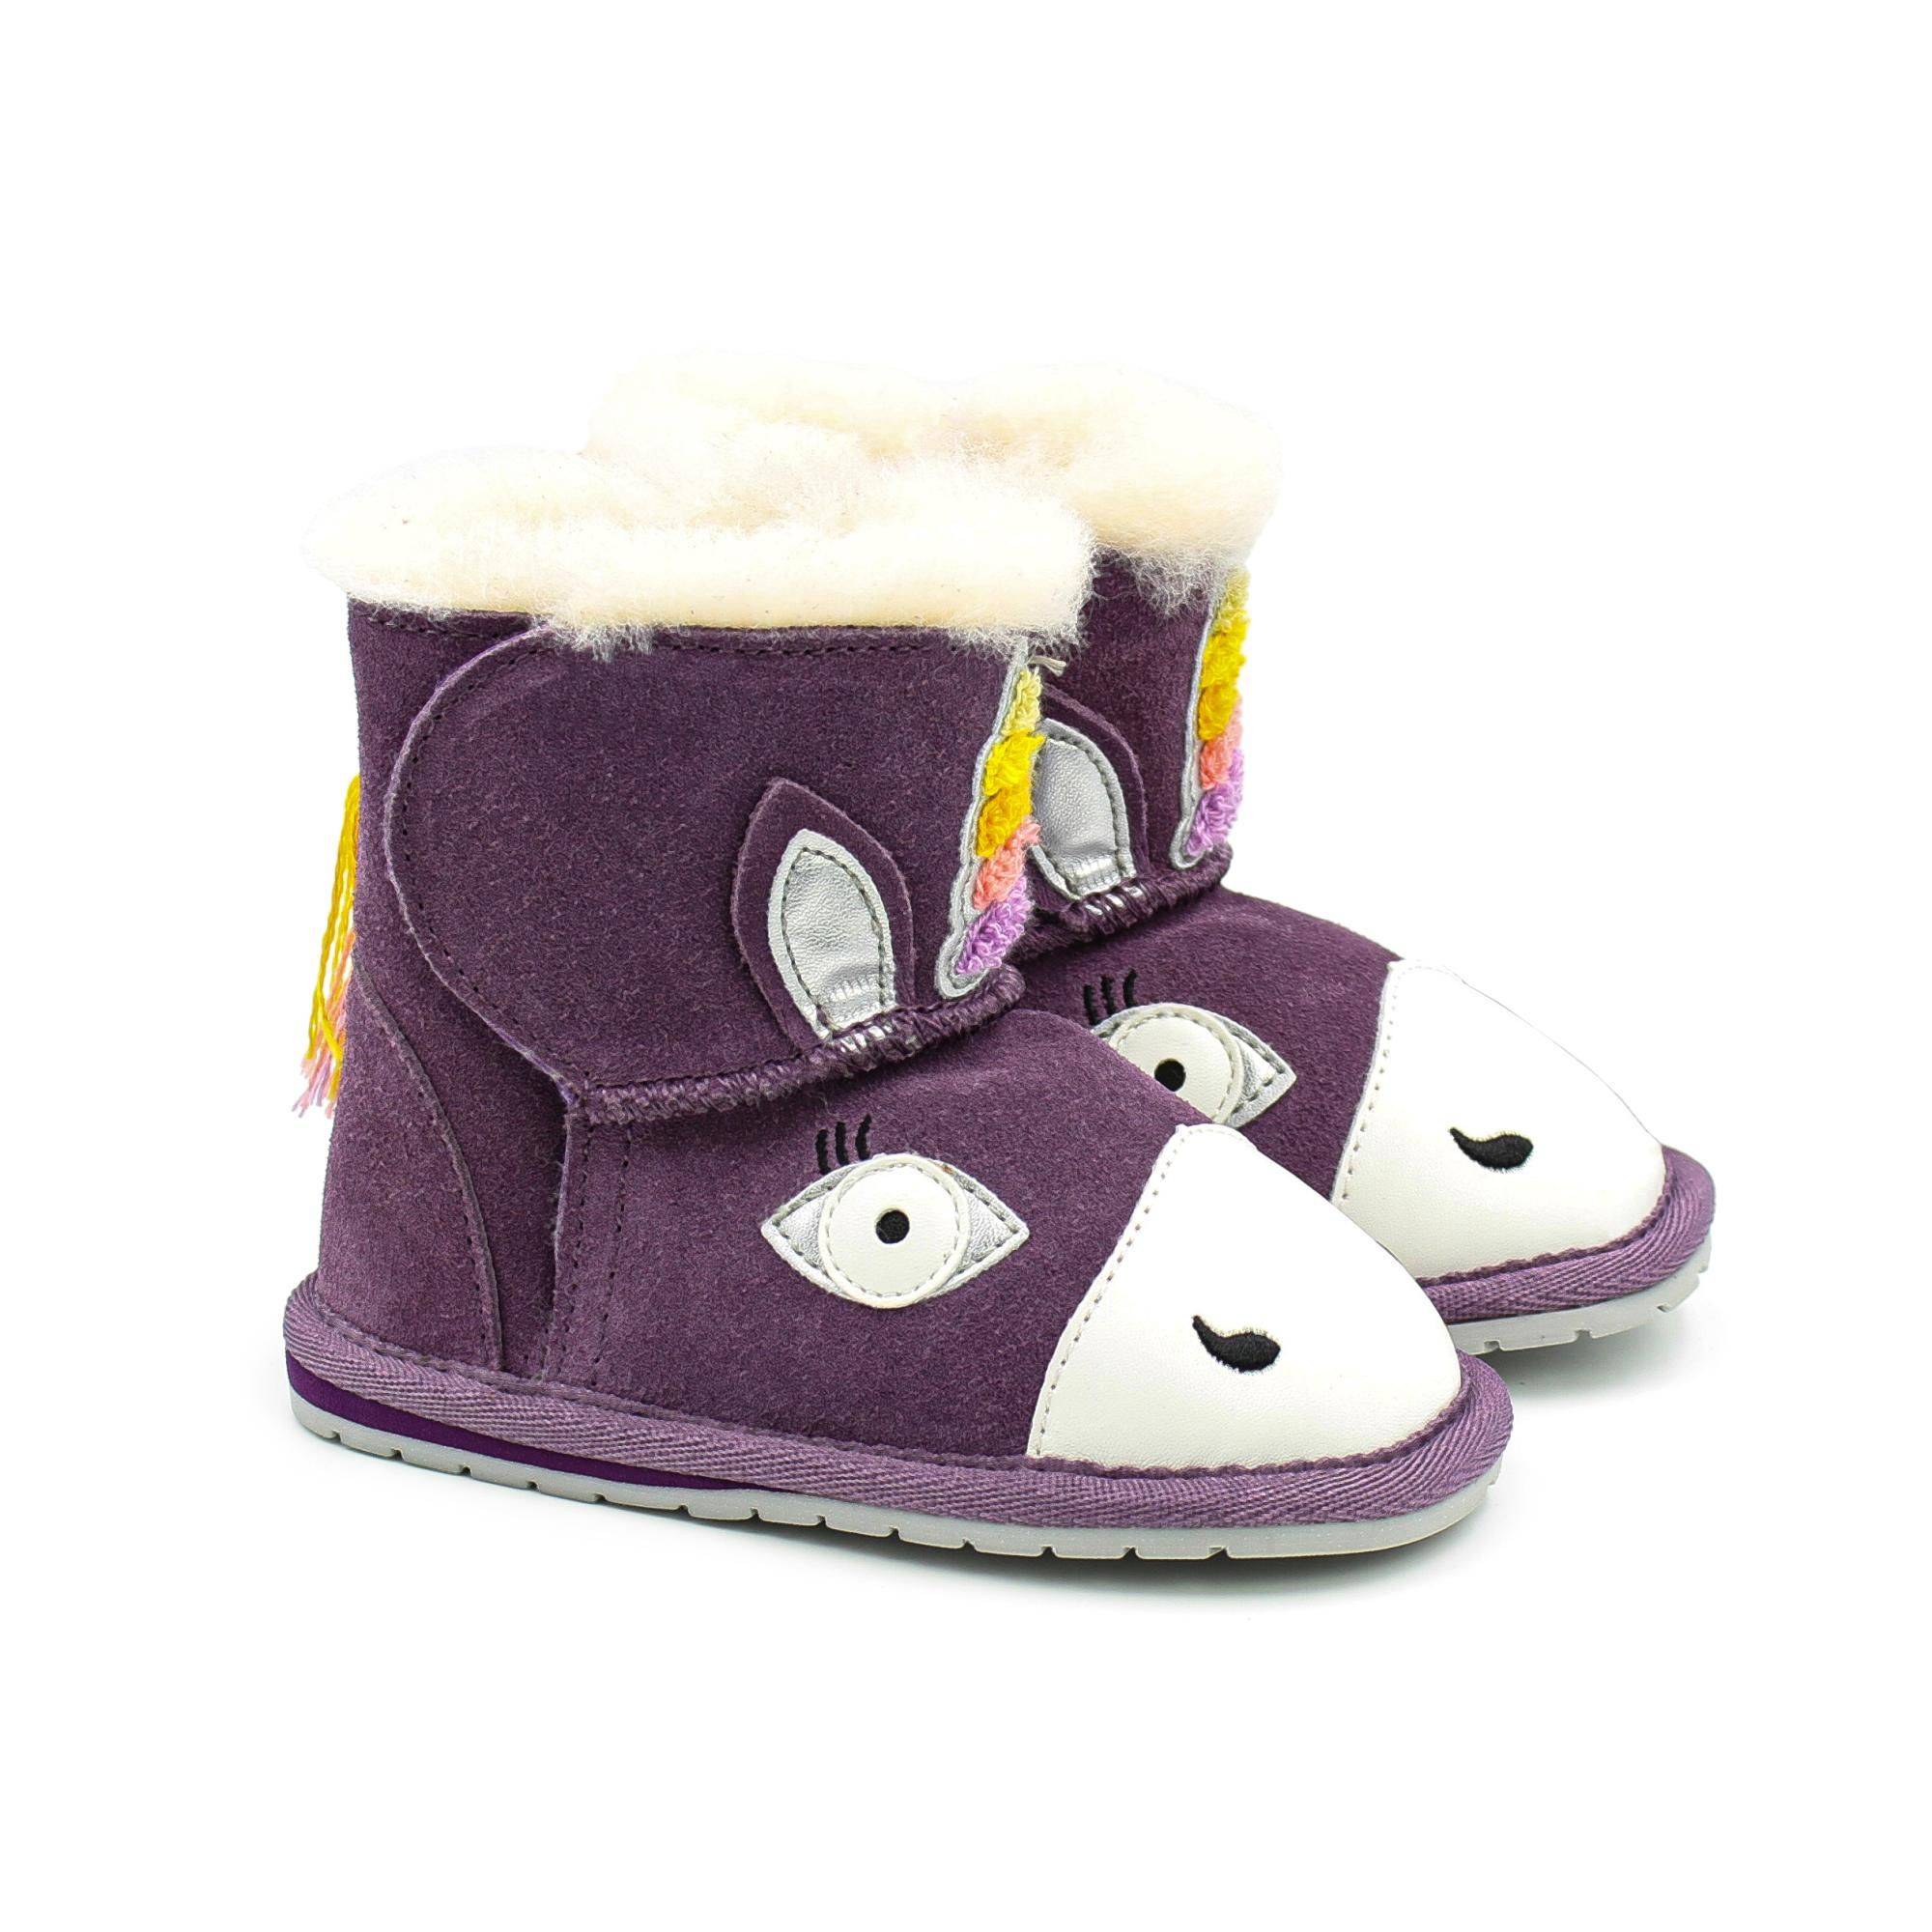 Детские ботинки из овчины (угги) EMU Australia(Magical Unicorn Walker B12409), фиолетовые, цвет фиолетовый, размер 19 - фото 1